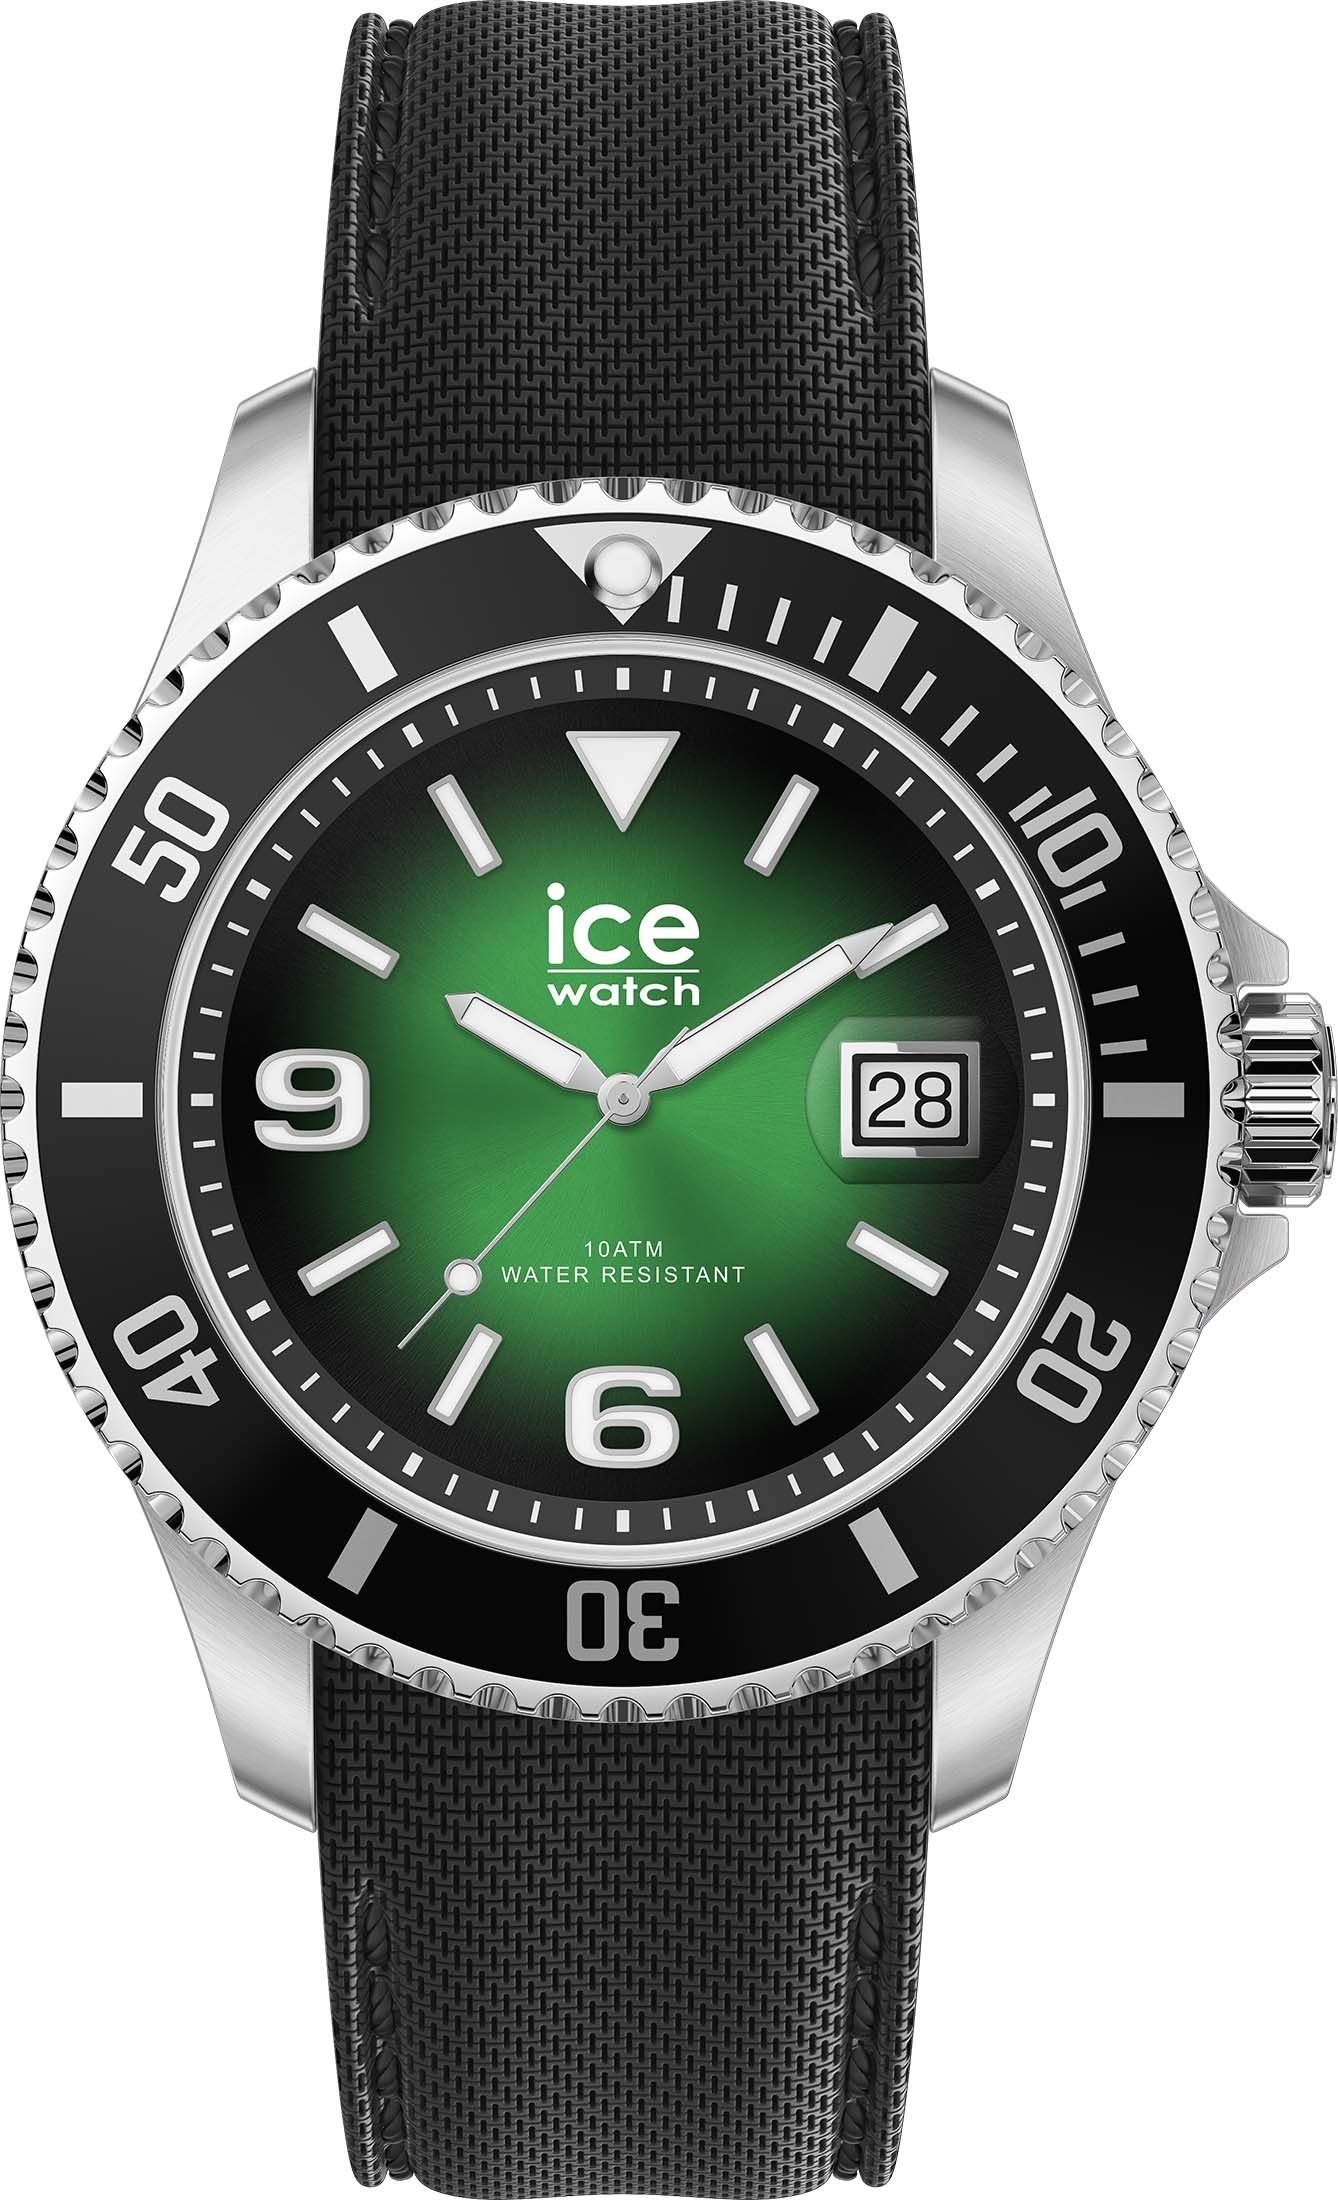 Vorbildlich green Quarzuhr grün ICE L, ice-watch 020343 steel- Deep